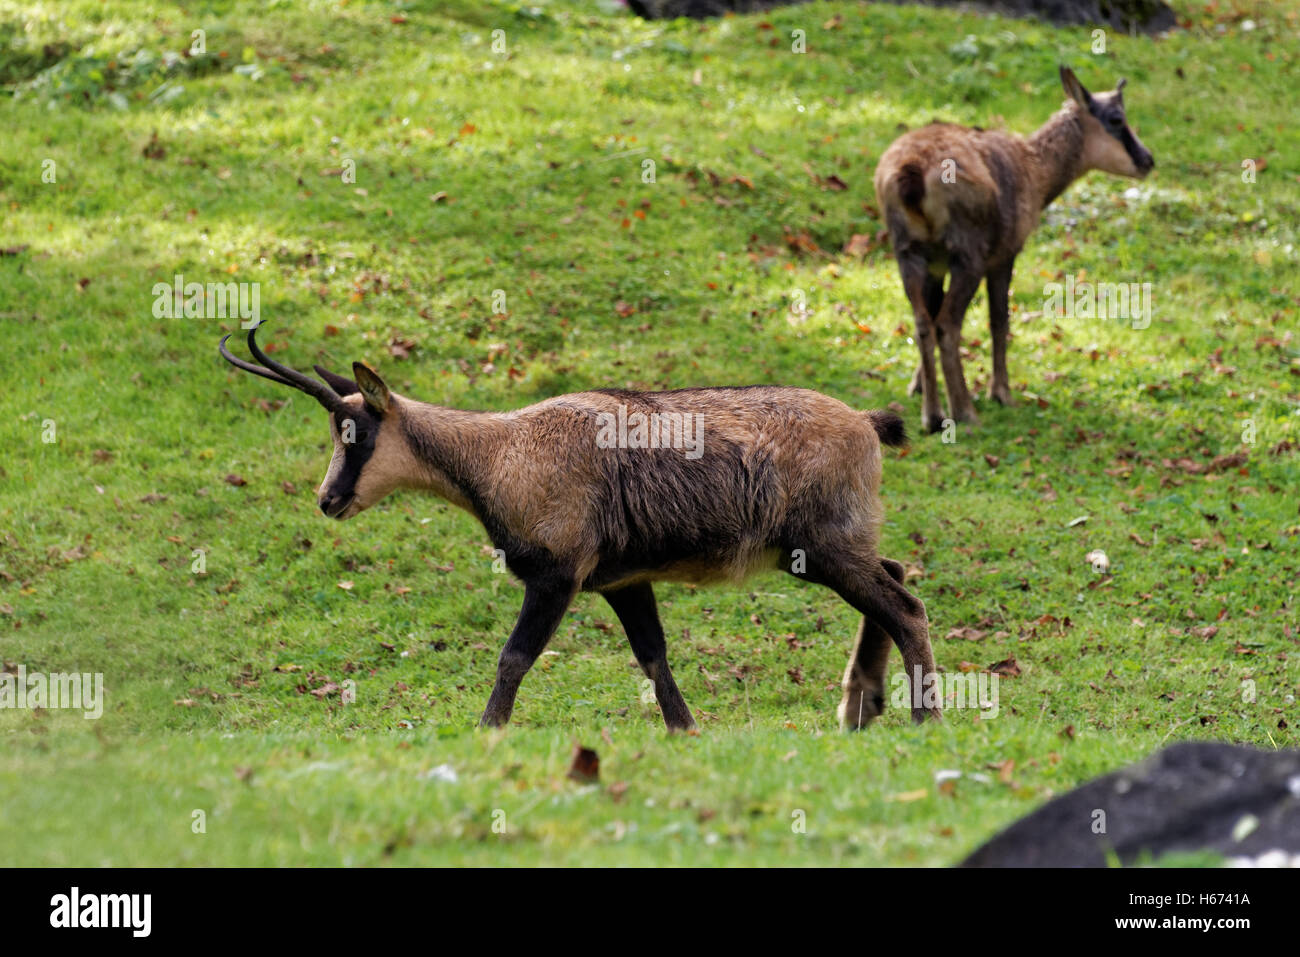 Pyrenäen-Gämsen, Rupicapra Pyrenaica, ist eine Ziege-Antilope, die in den Pyrenäen, kantabrischen Gebirge und Apennin Berg lebt Stockfoto